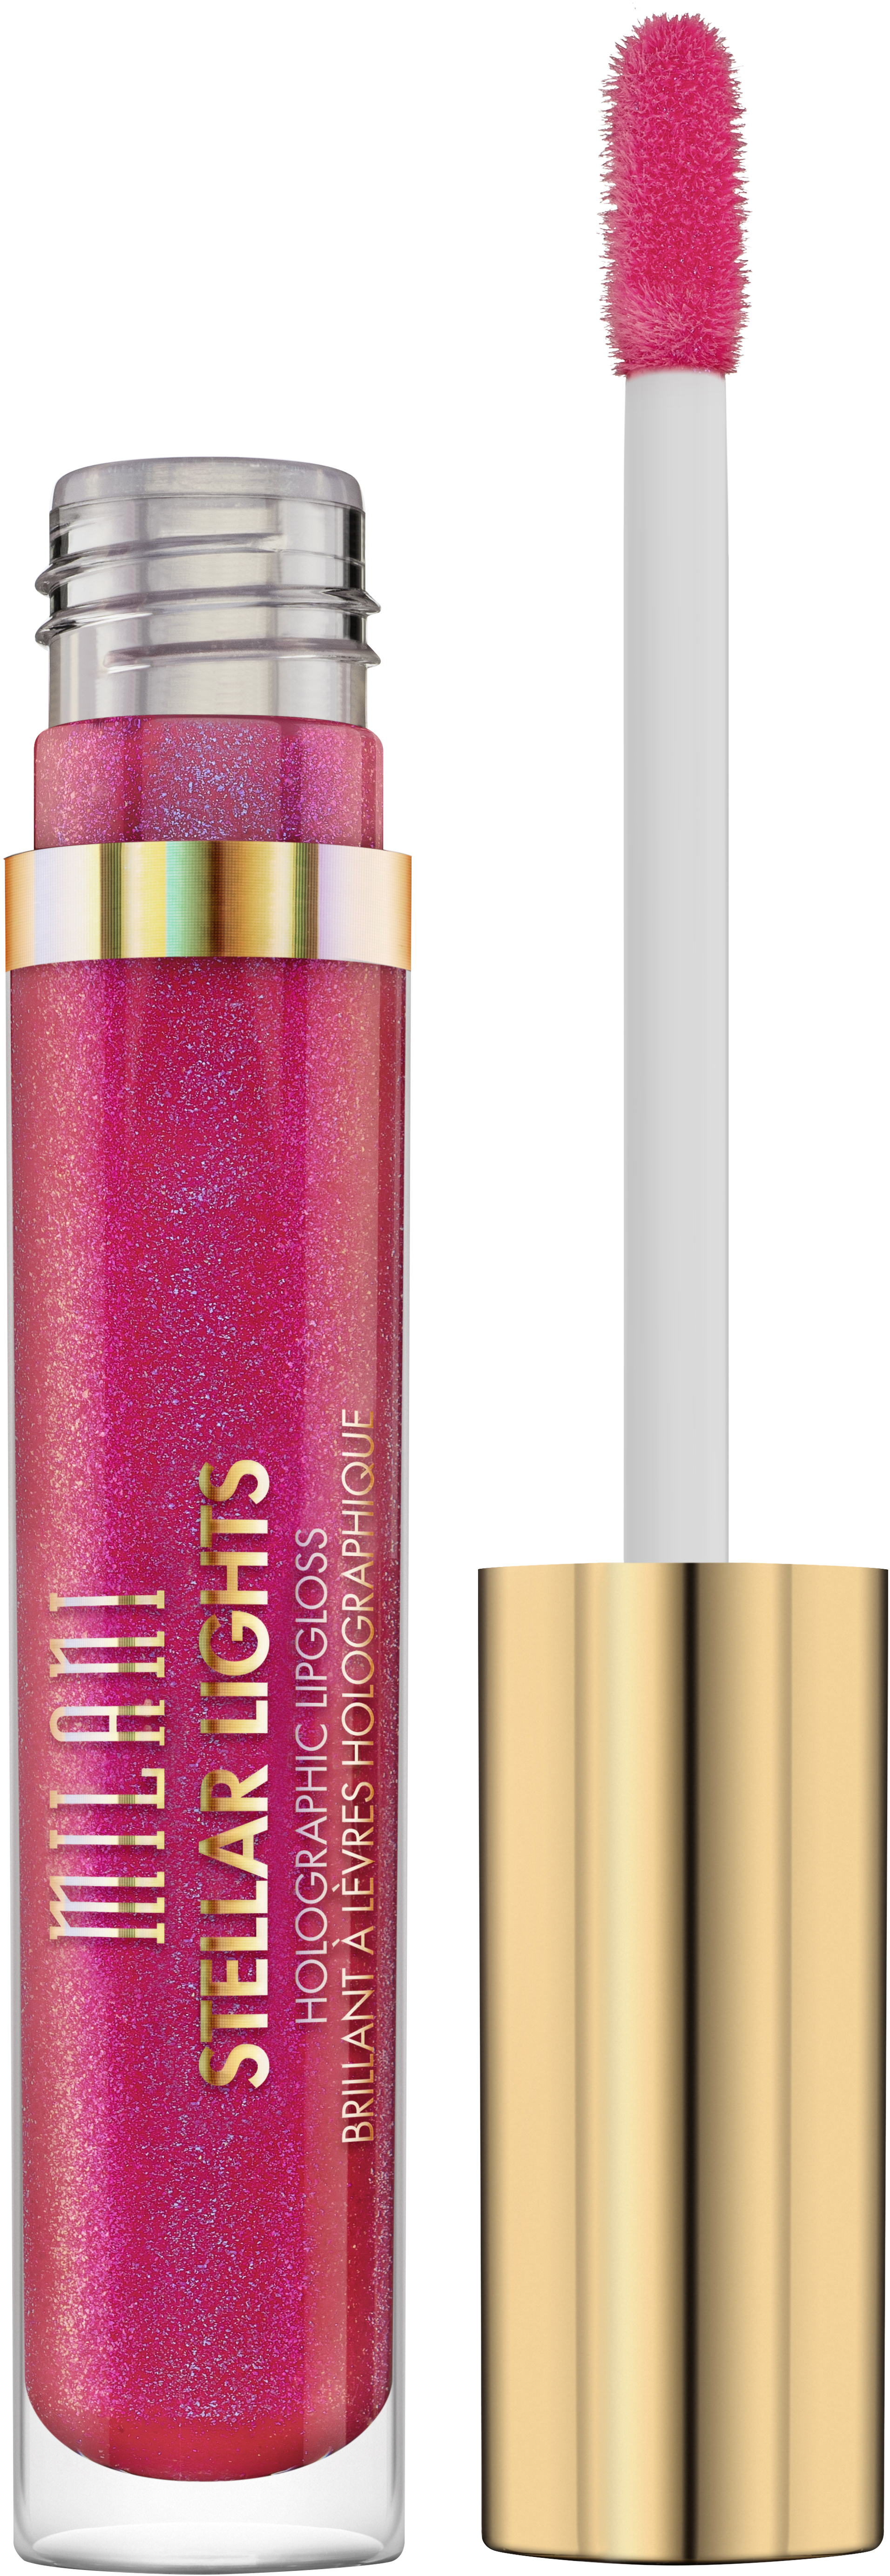 Milani Stellar Lights Holographic Lip Gloss - 05 Fluorescent Fuchsia - Lipgloss - Roze - 3.6 ml